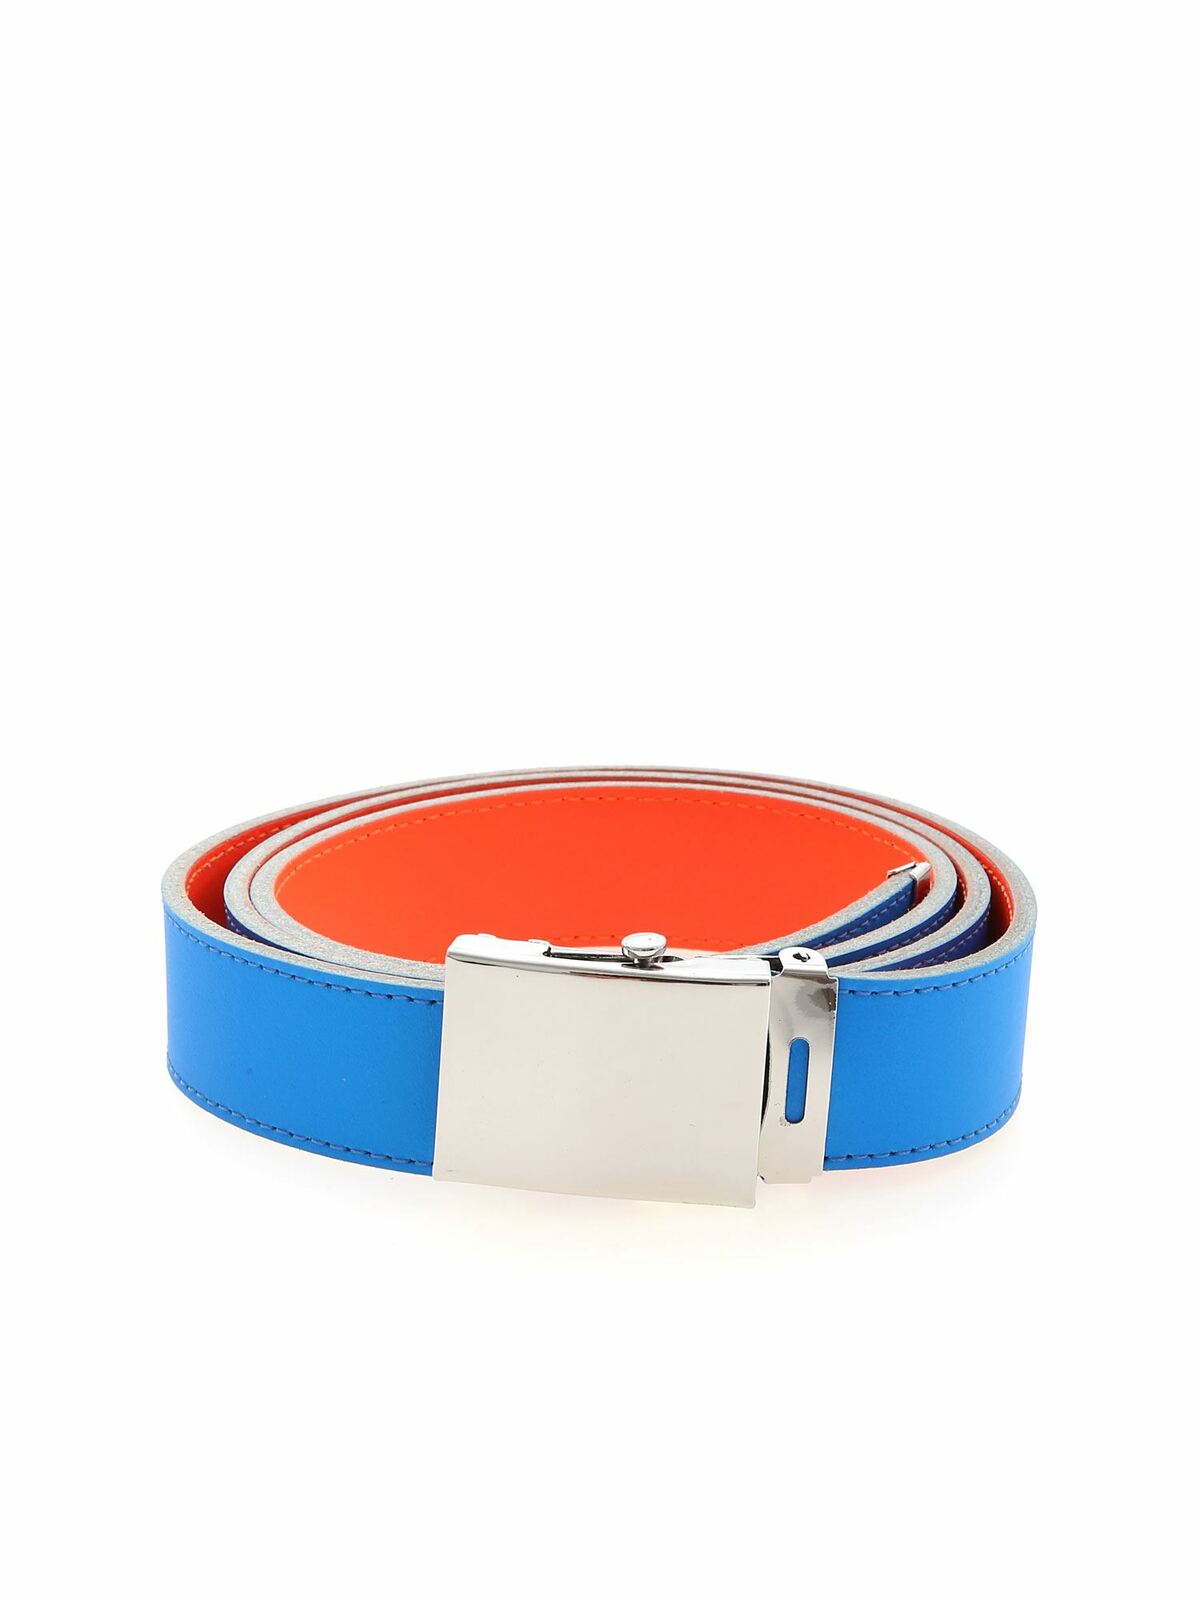 Comme Des Garçons Super Fluo Reversible Belt In Blue And Orange